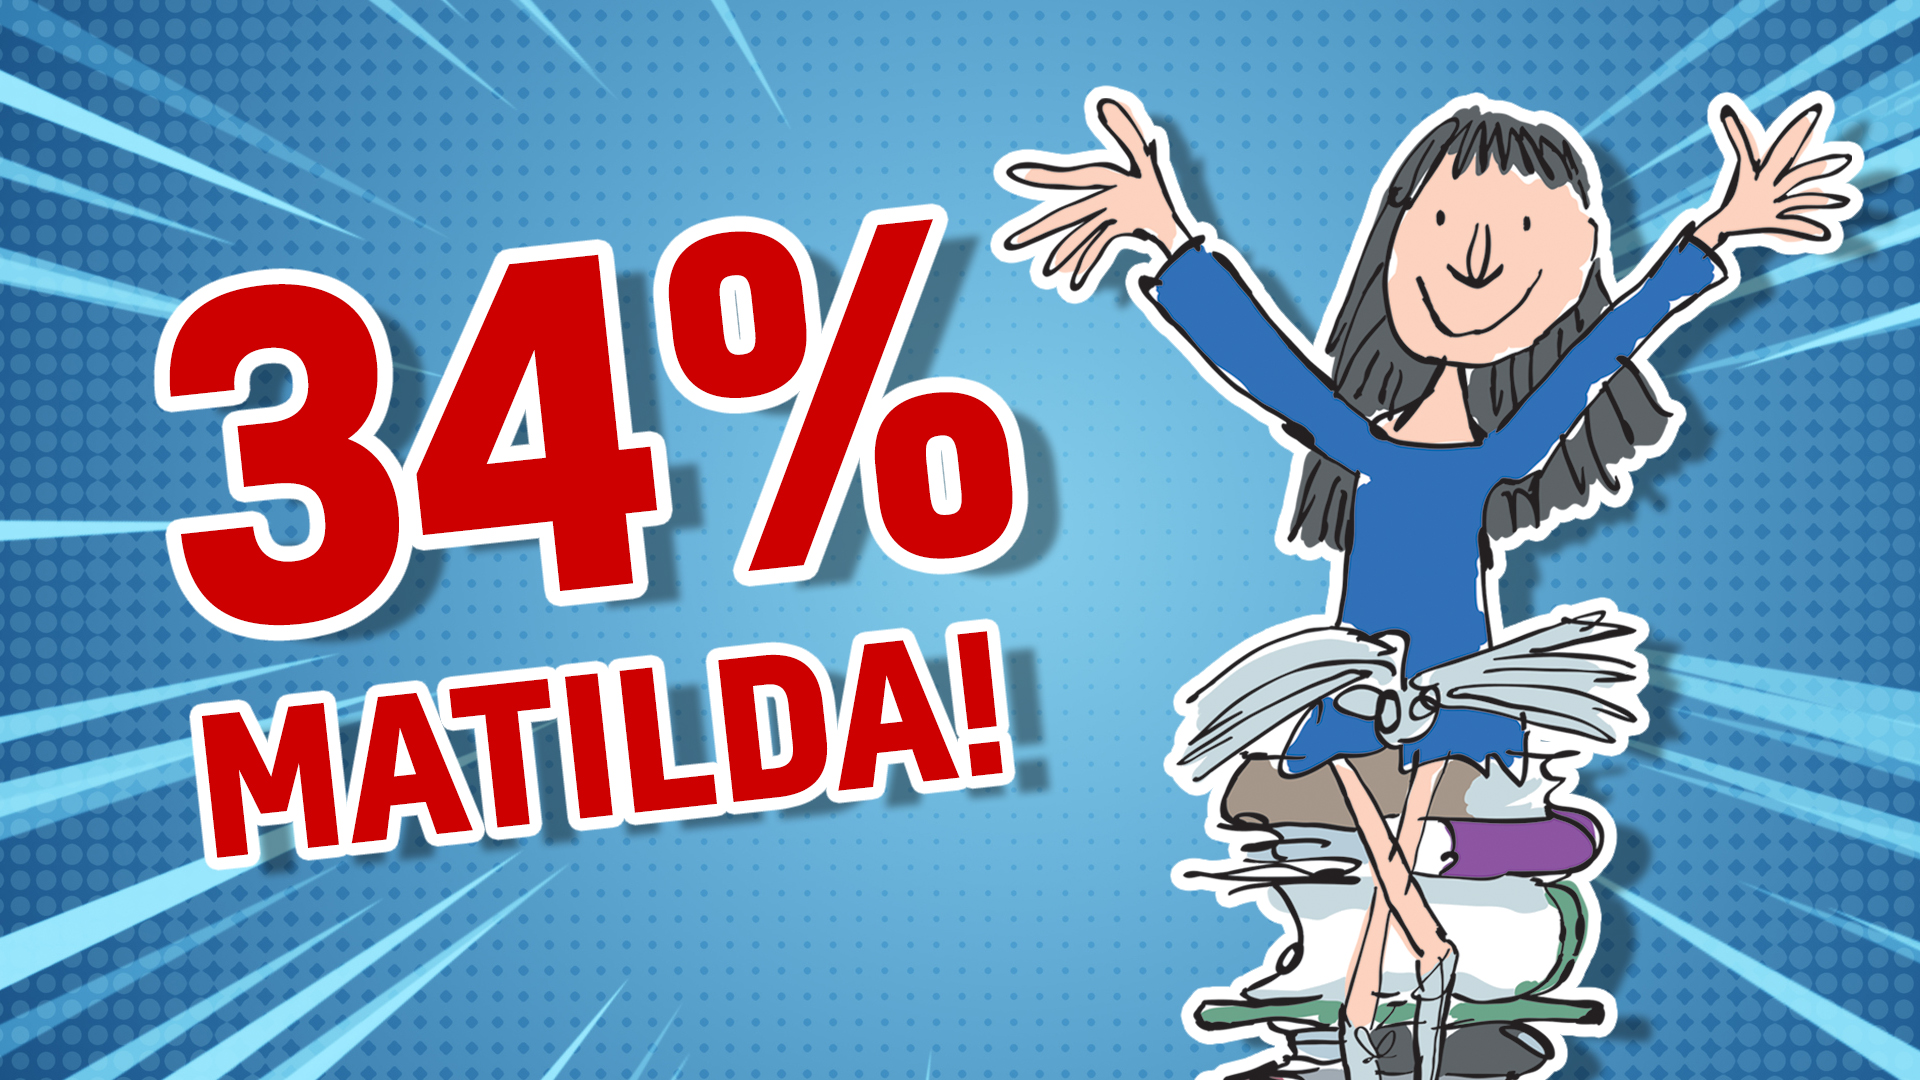 34% Matilda